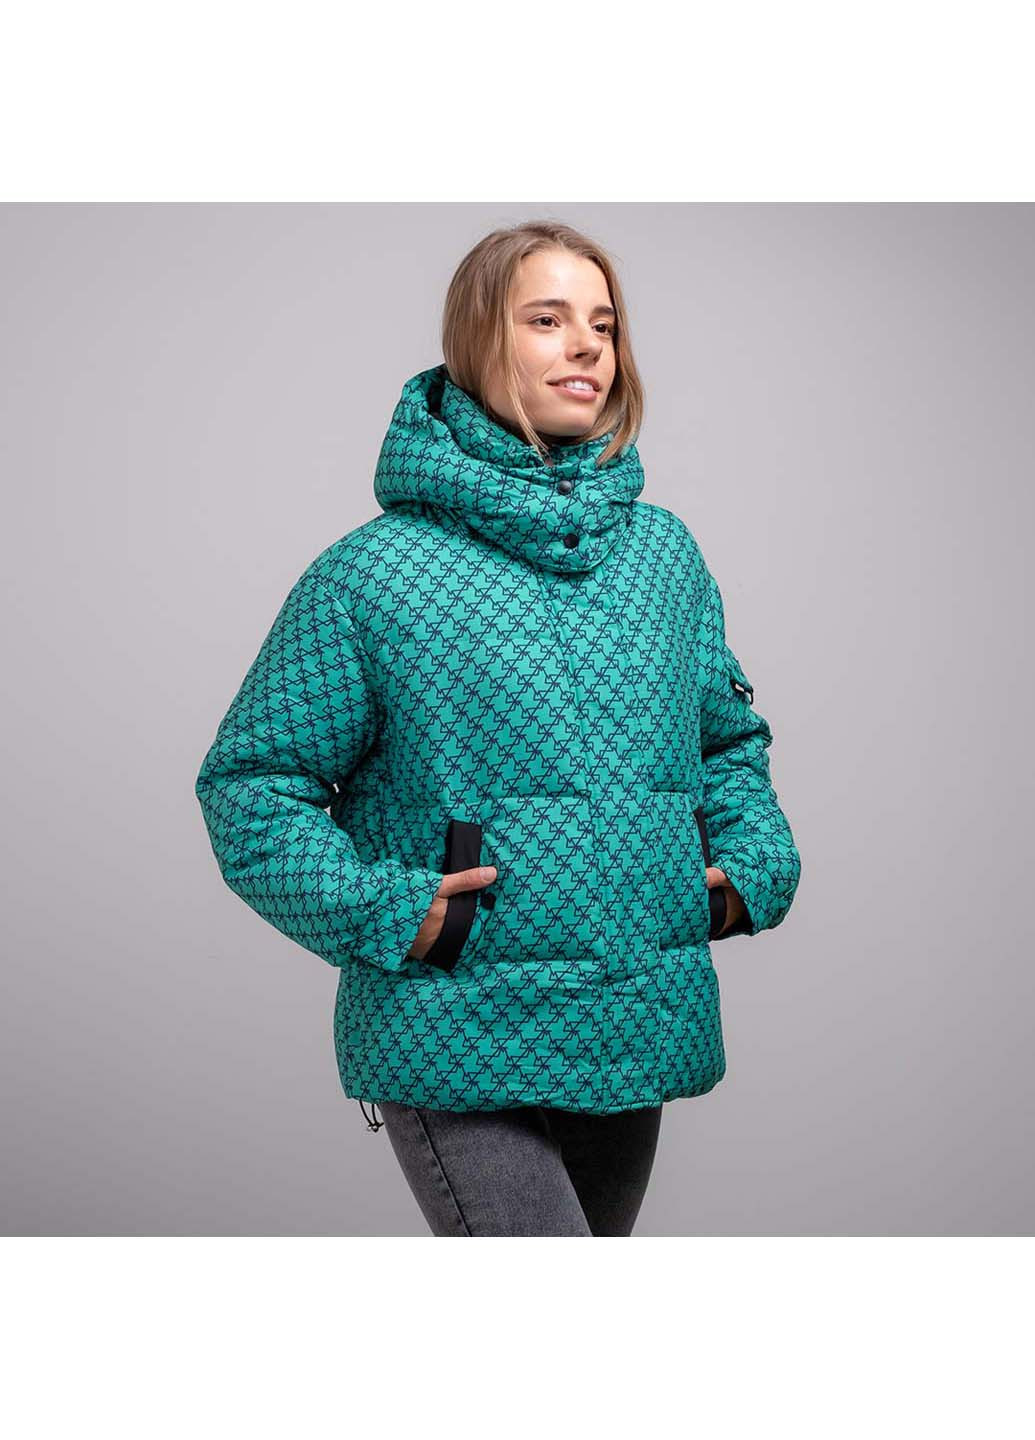 Зеленая демисезонная куртка женская Fashion